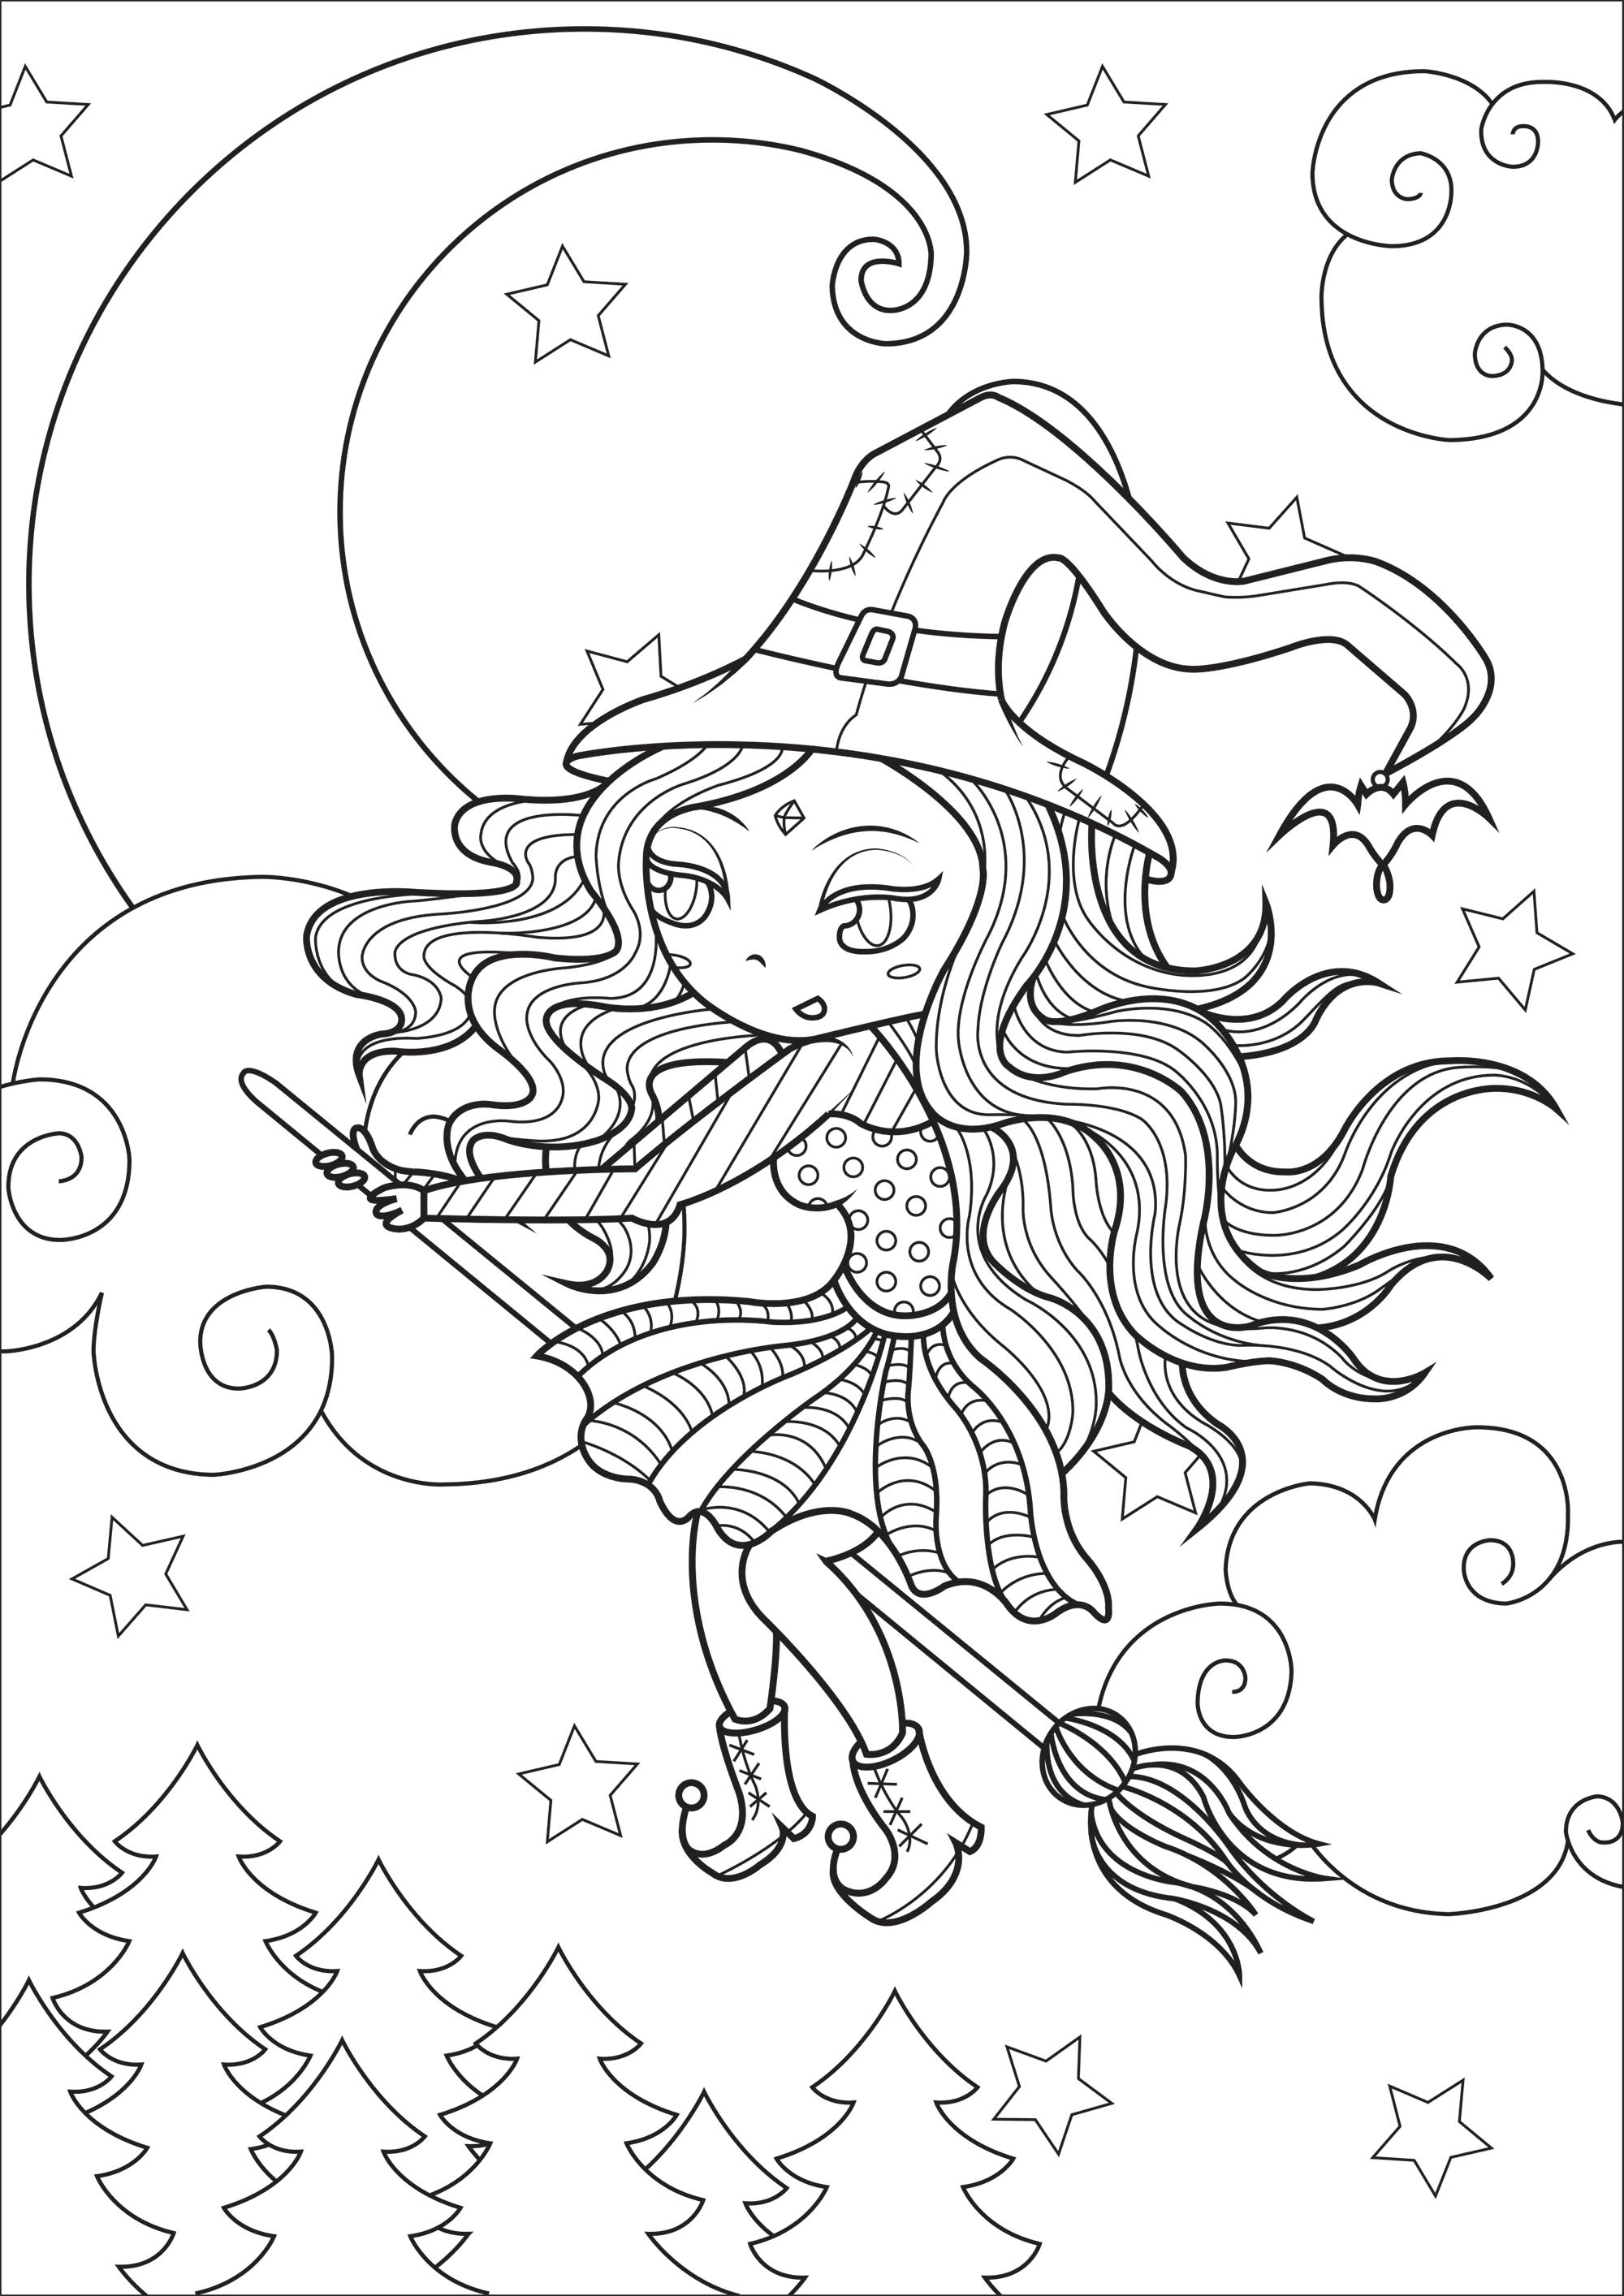 Strega in volo. Questa pagina originale da colorare rappresenta una strega con il suo vestito colorato e il suo cappello a punta, in pieno volo davanti a un cielo stellato e a una bella luna.